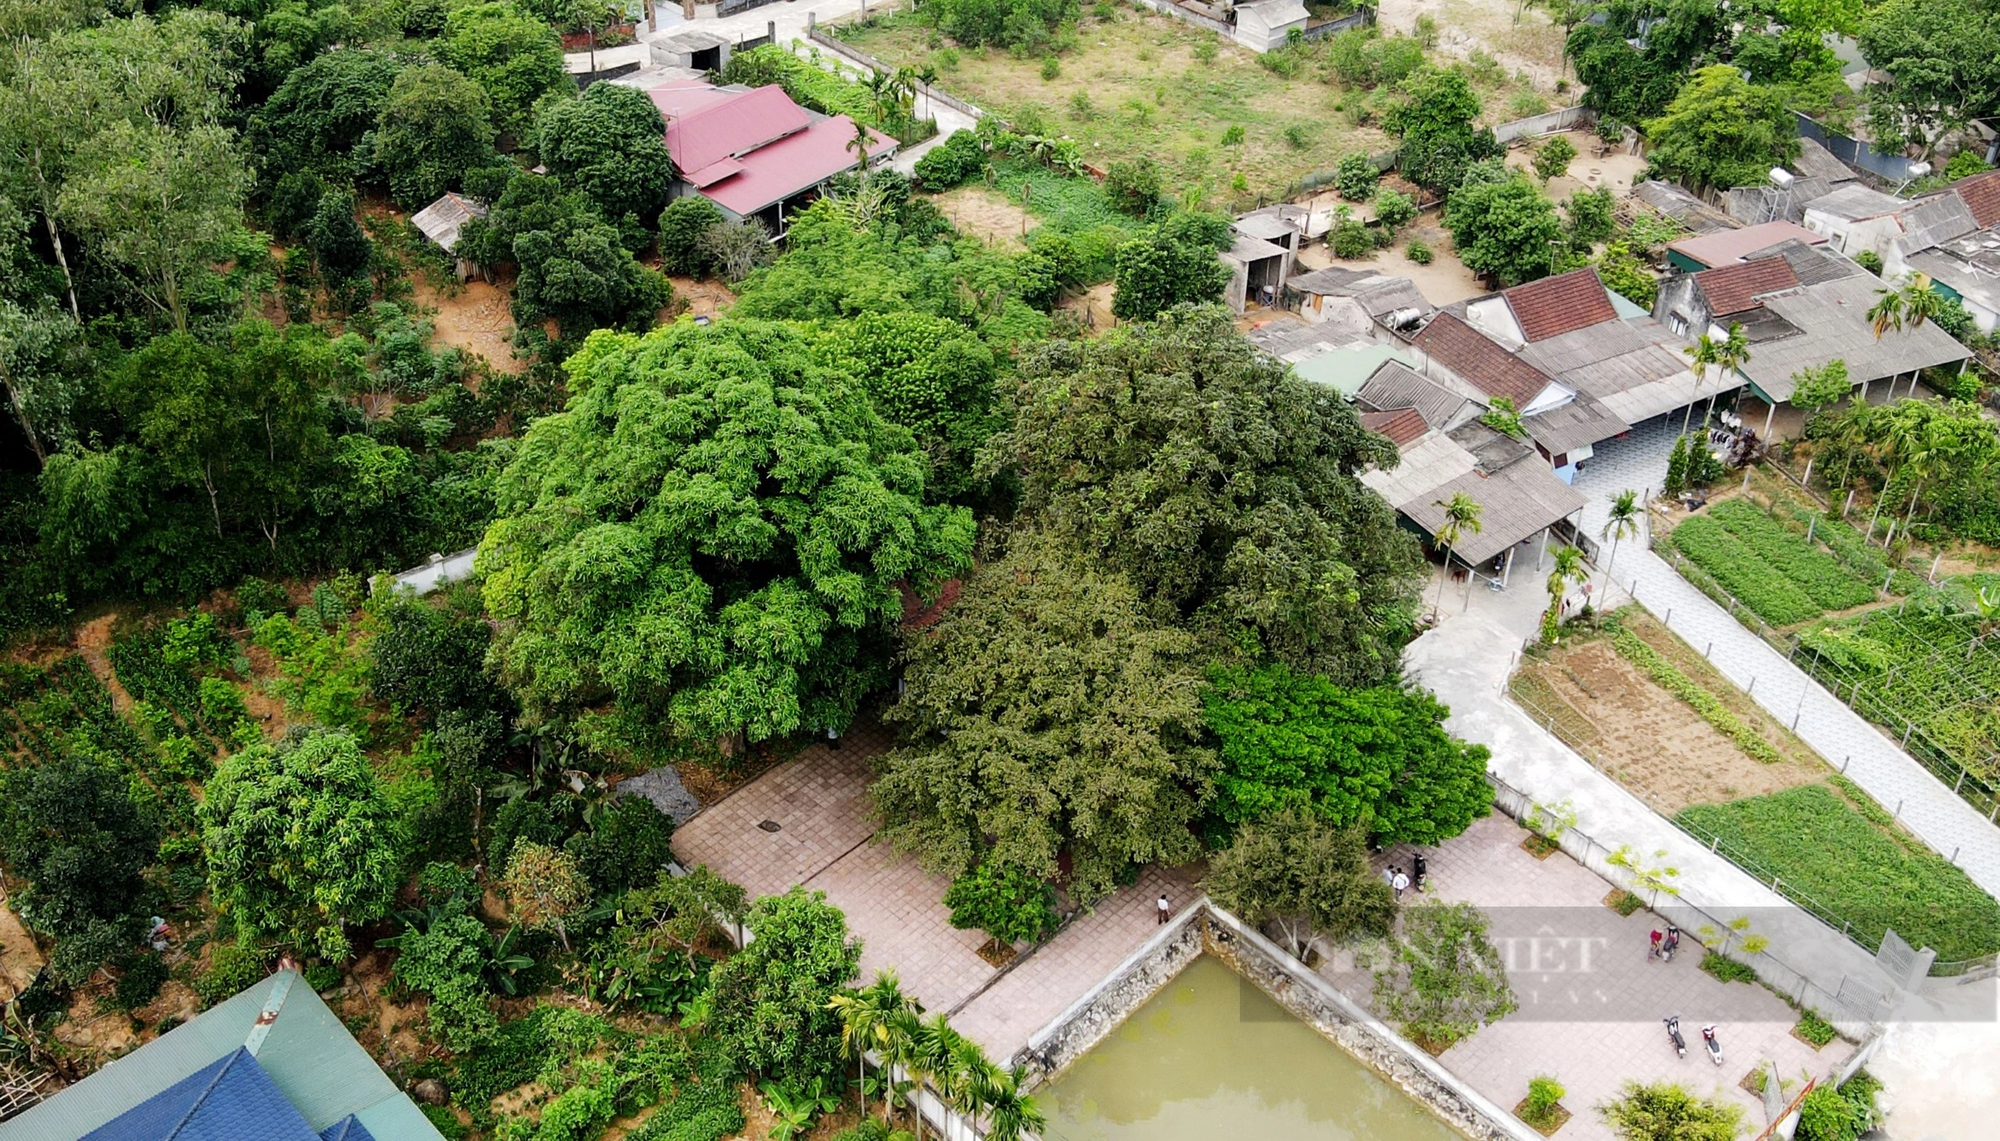 Ở một thị trấn của Hà Tĩnh có 2 cây cổ thụ 600 tuổi "trấn" cửa đền Cương Quốc Công Nguyễn Xí- Ảnh 14.